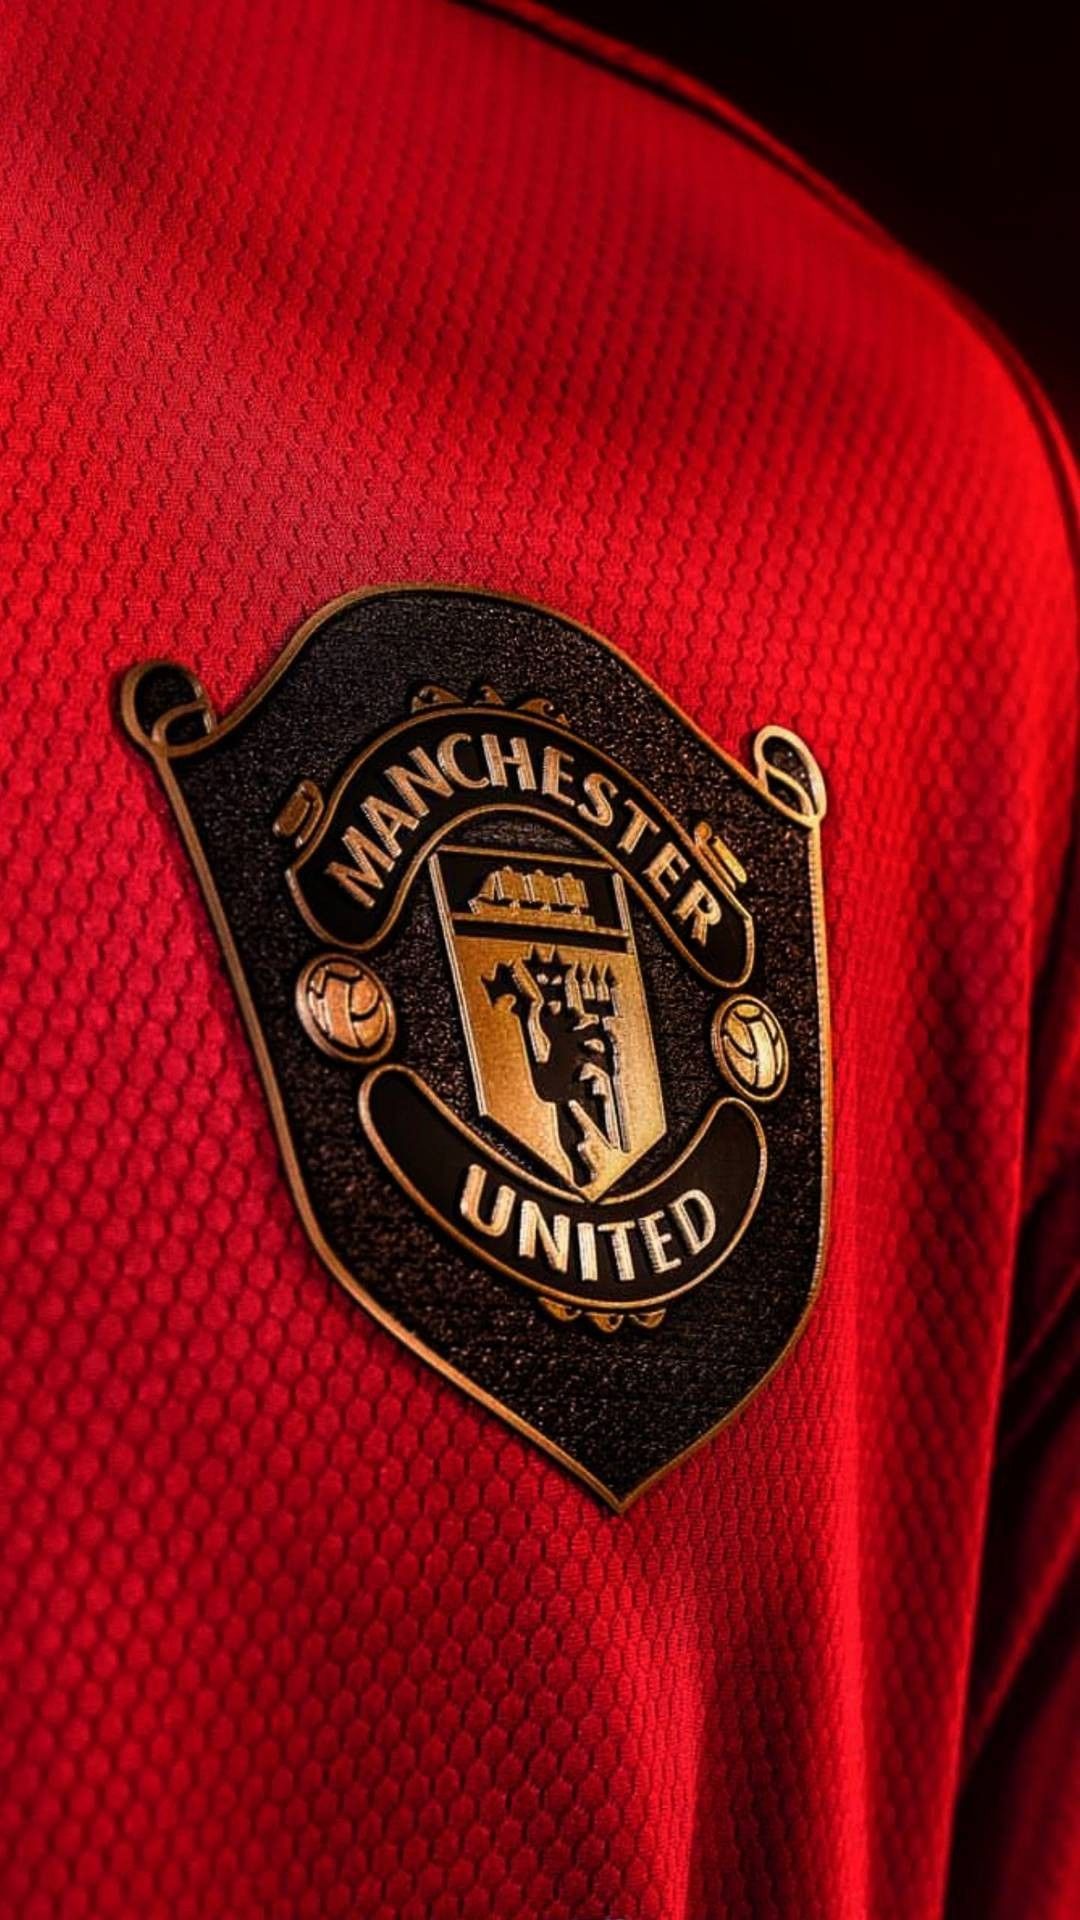 Man utd wallpaper design. Manchester united logo